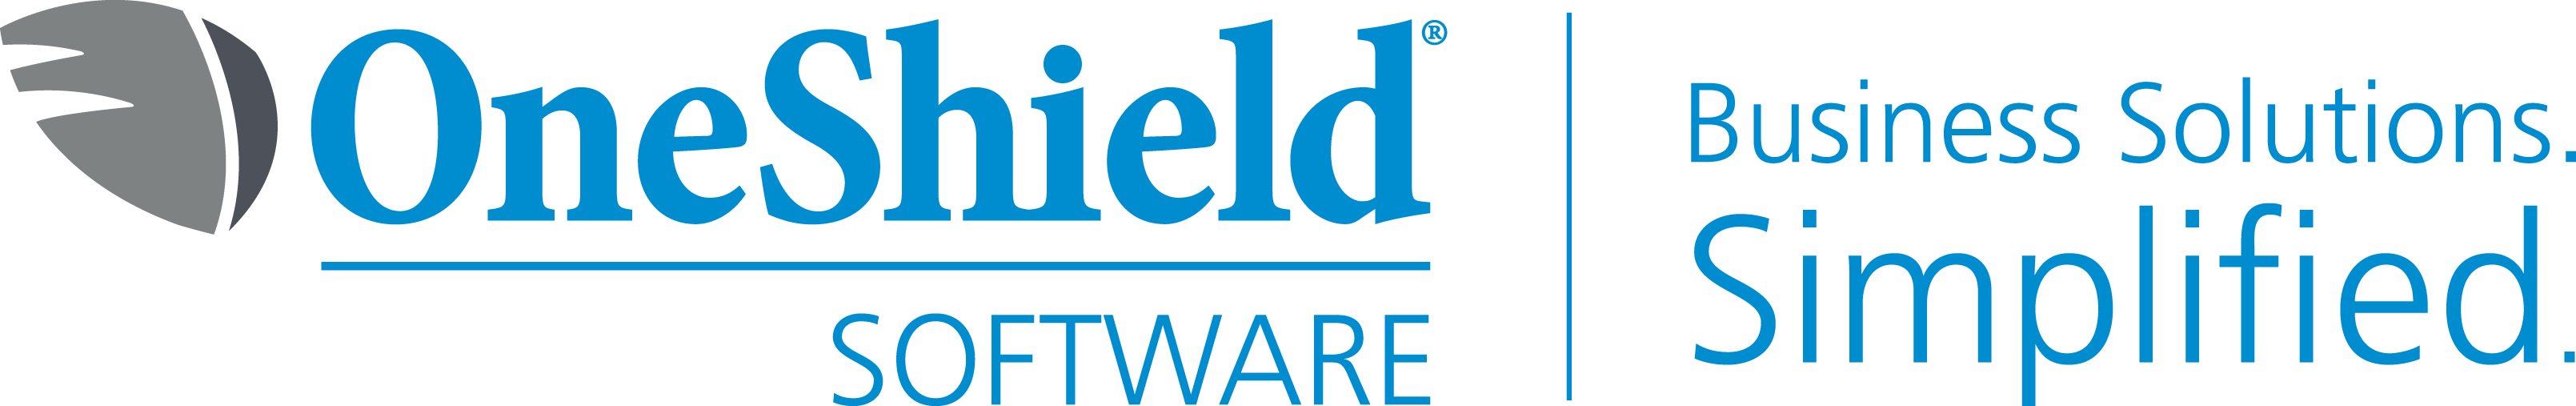 OneShield Software E